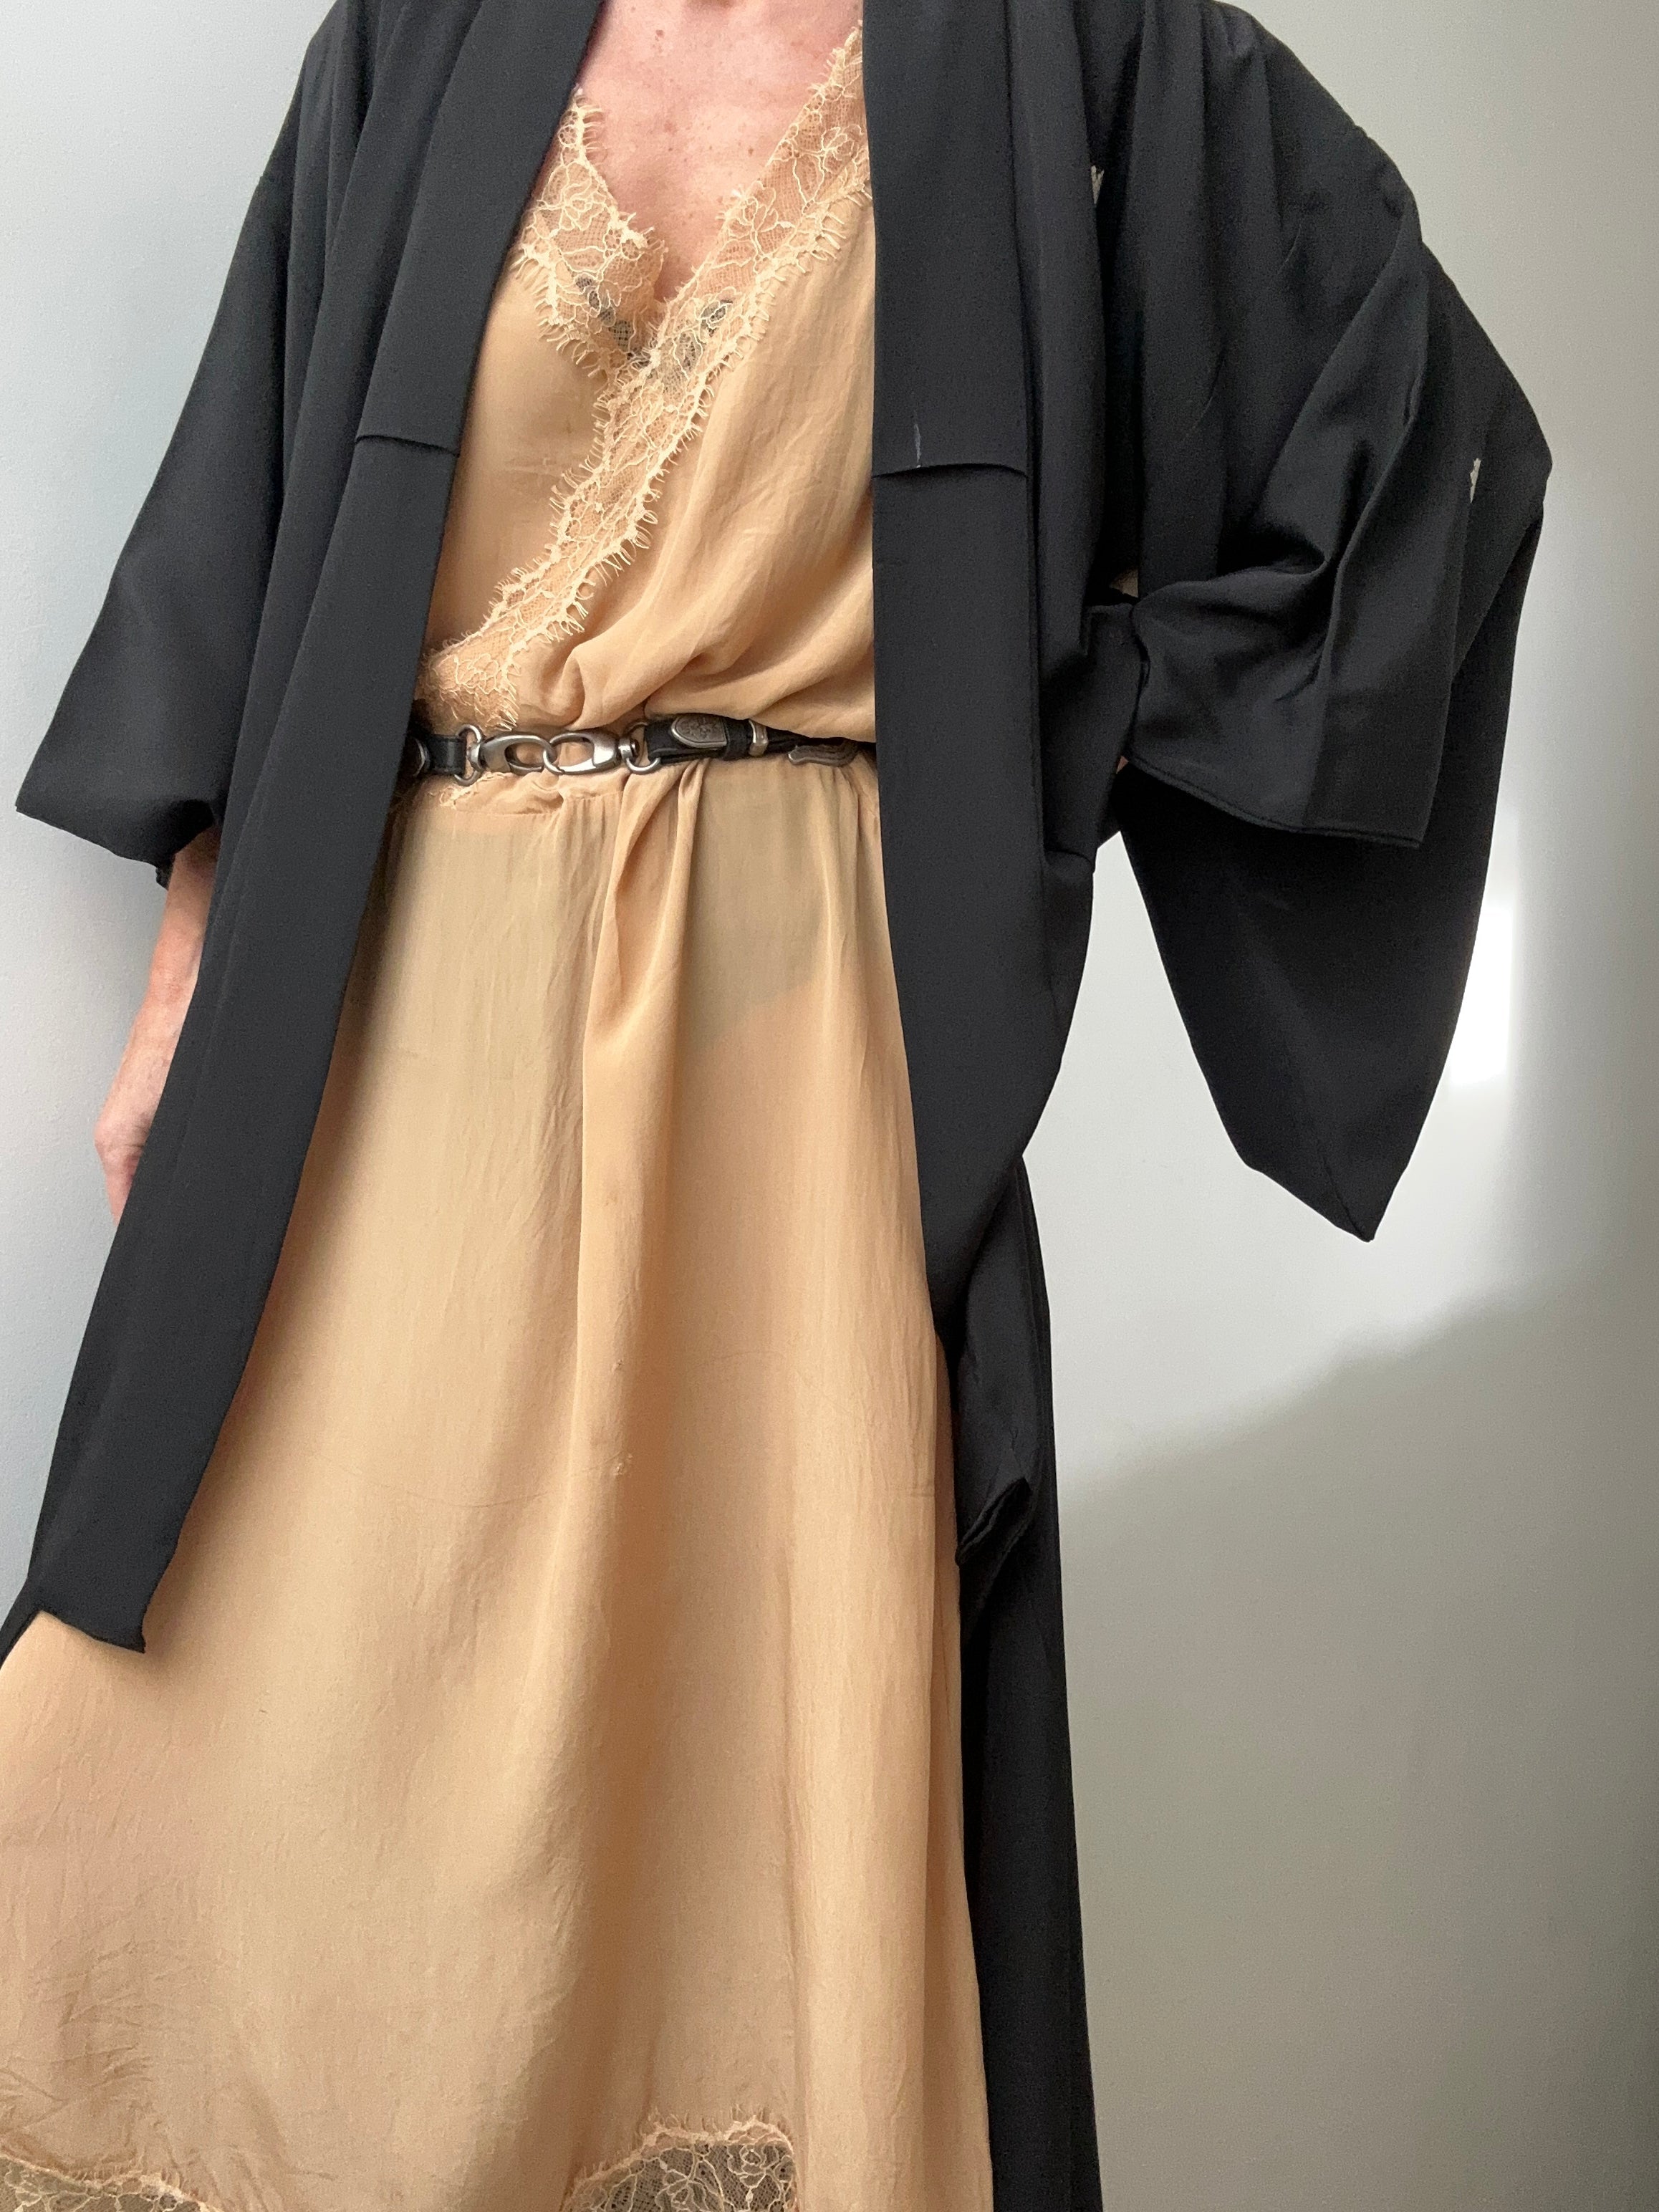 Future Nomads Kimonos Free Size Long Silk Black Kimono